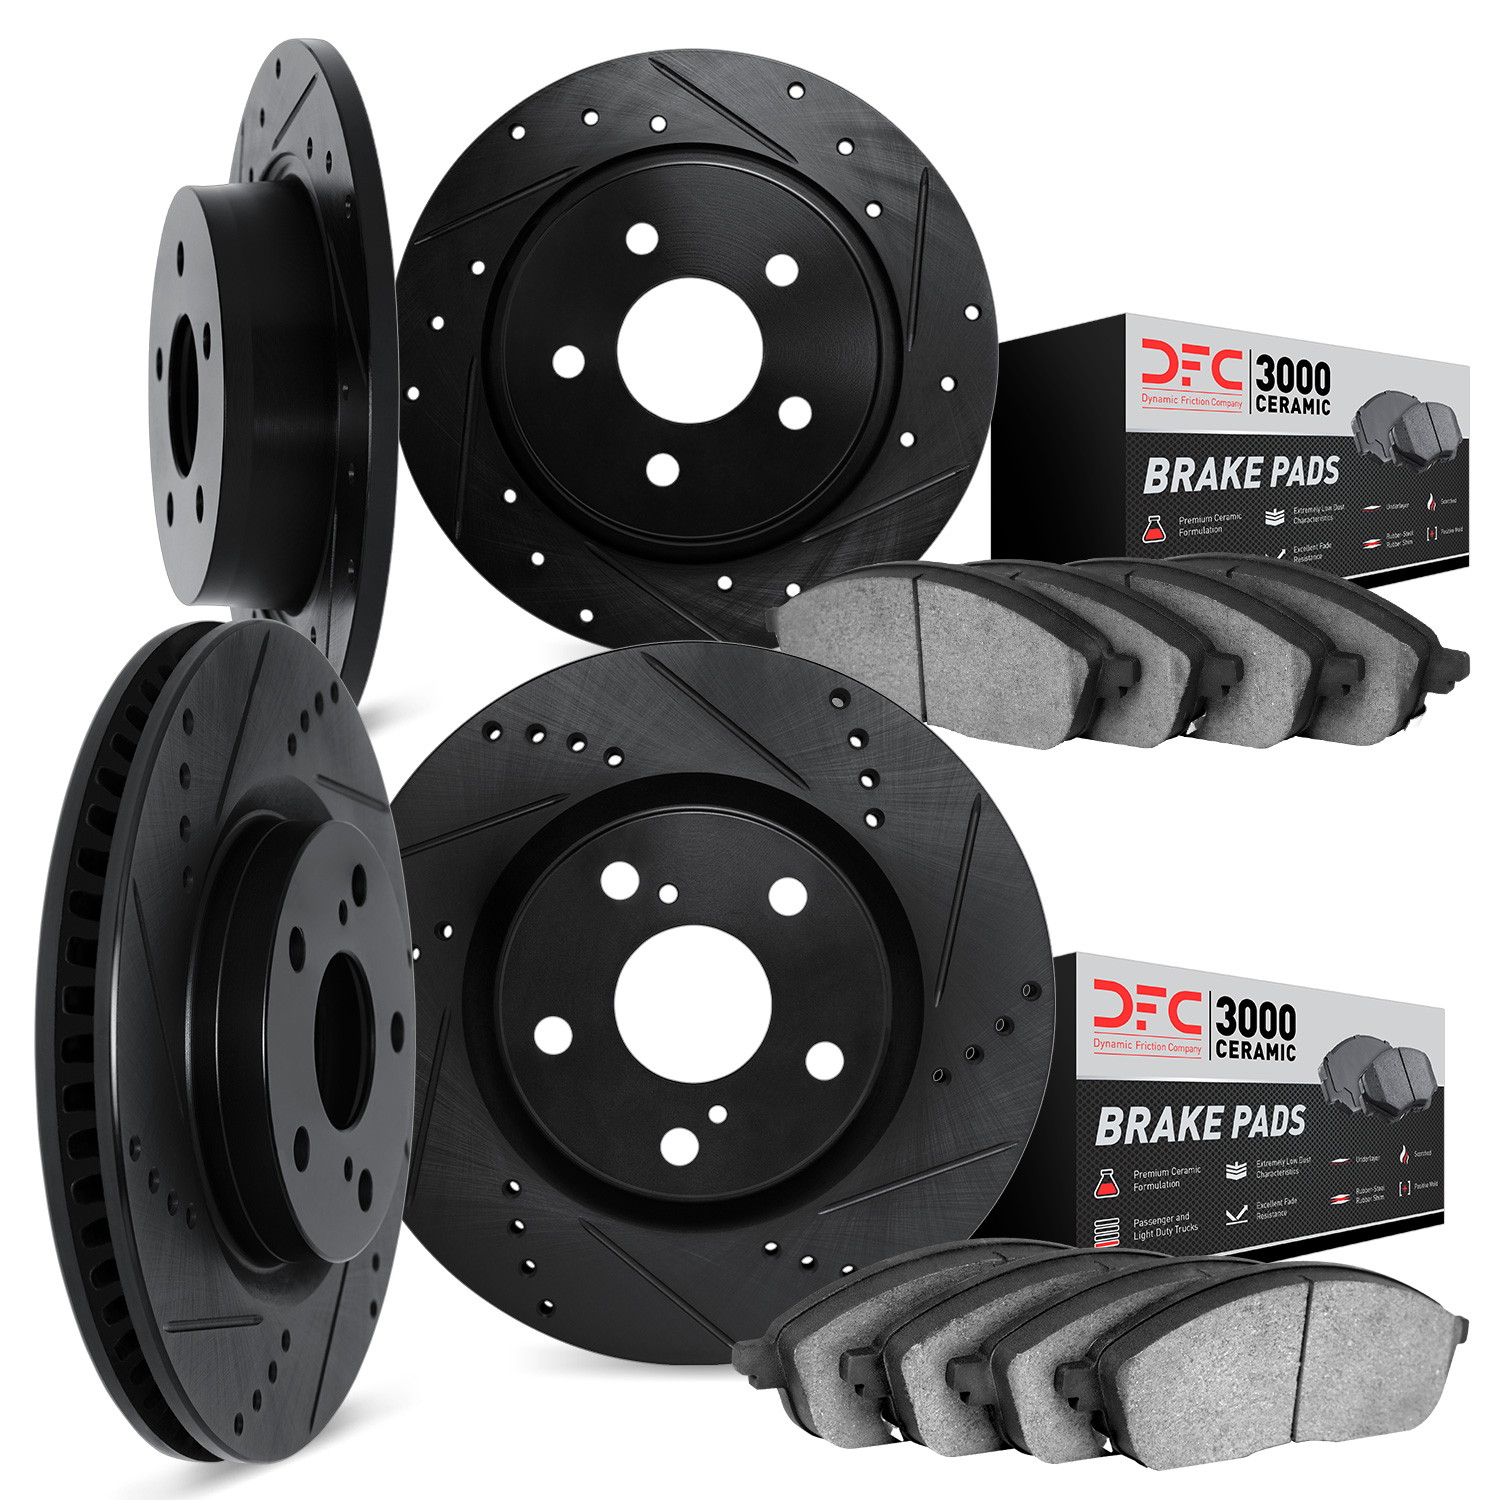 8304-03088 Drilled/Slotted Brake Rotors with 3000-Series Ceramic Brake Pads Kit [Black], Fits Select Kia/Hyundai/Genesis, Positi